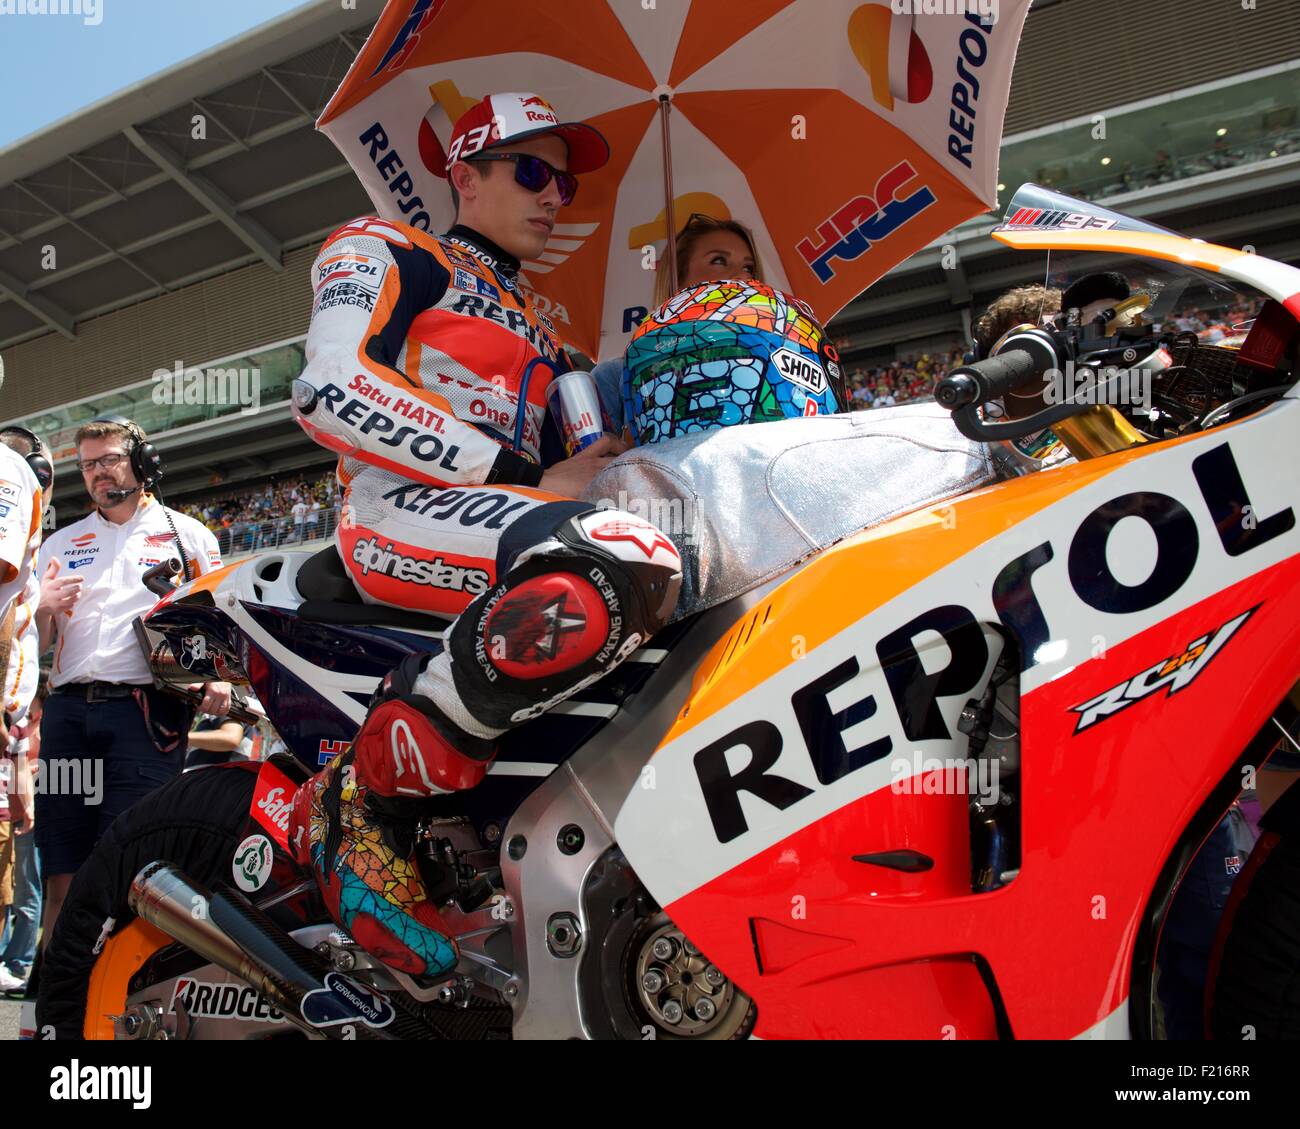 Circuit De Catalunya, Spanien 14. Juni 2015. Repsol Honda Fahrer und aktuellen Weltmeister Marc Marquez sitzt auf seinem Fahrrad auf th Stockfoto